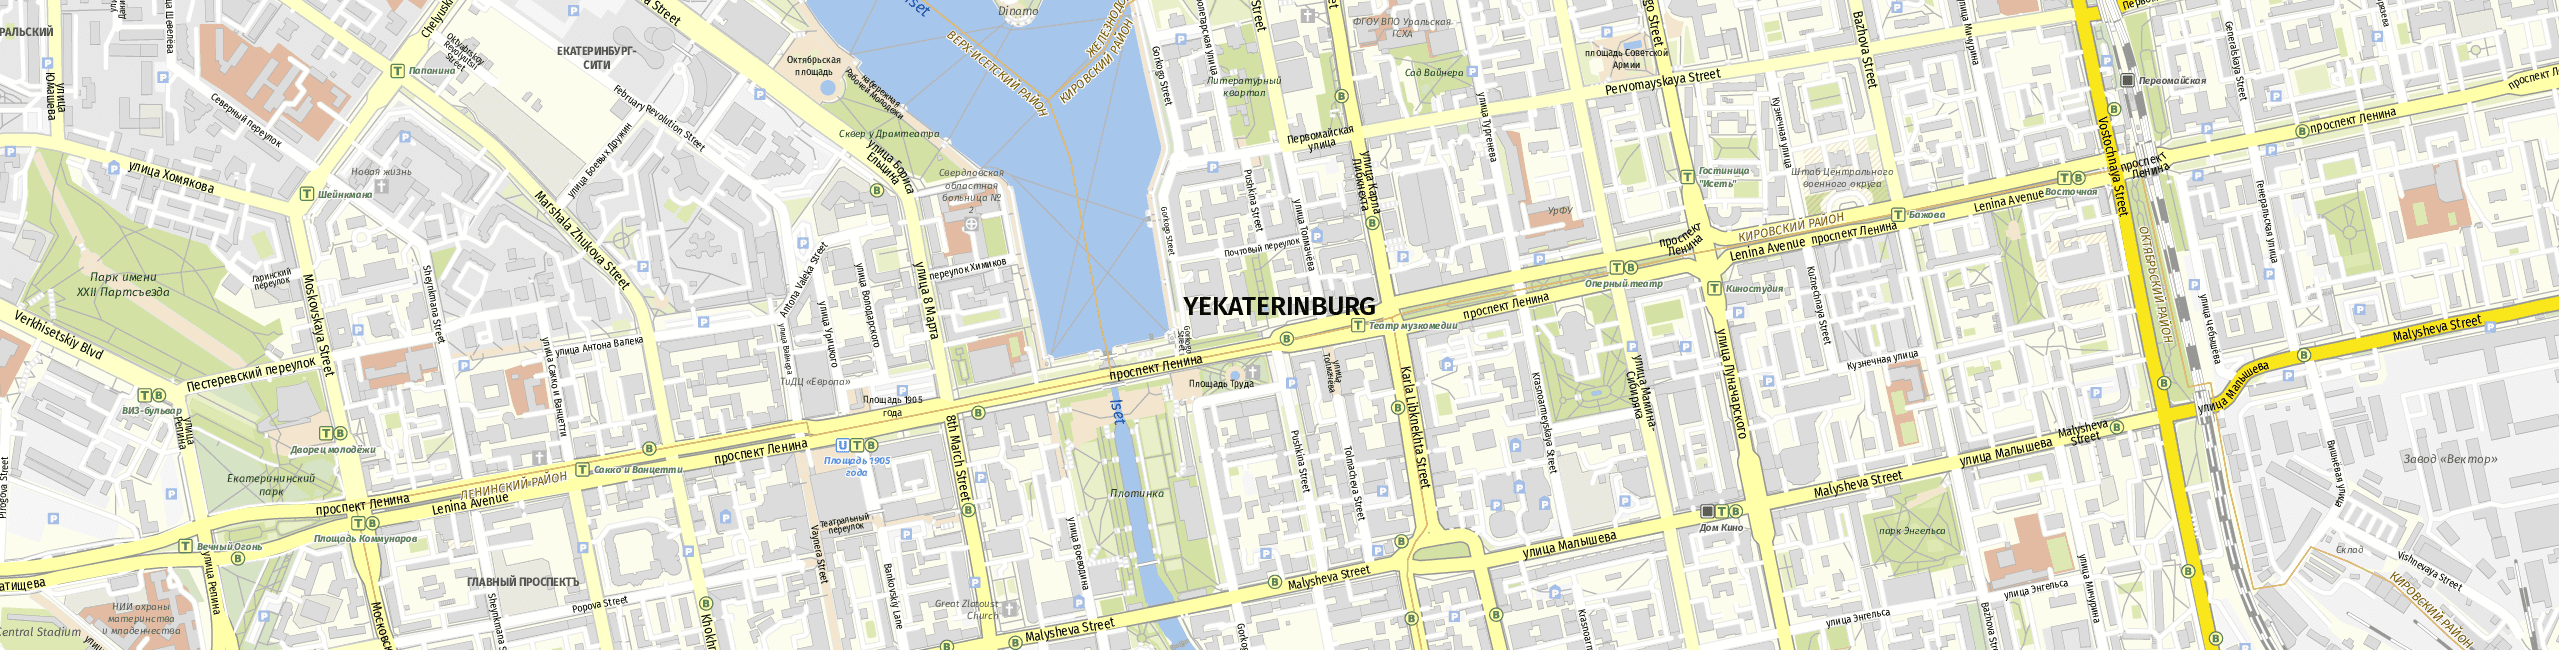 Stadtplan Yekaterinburg zum Downloaden.